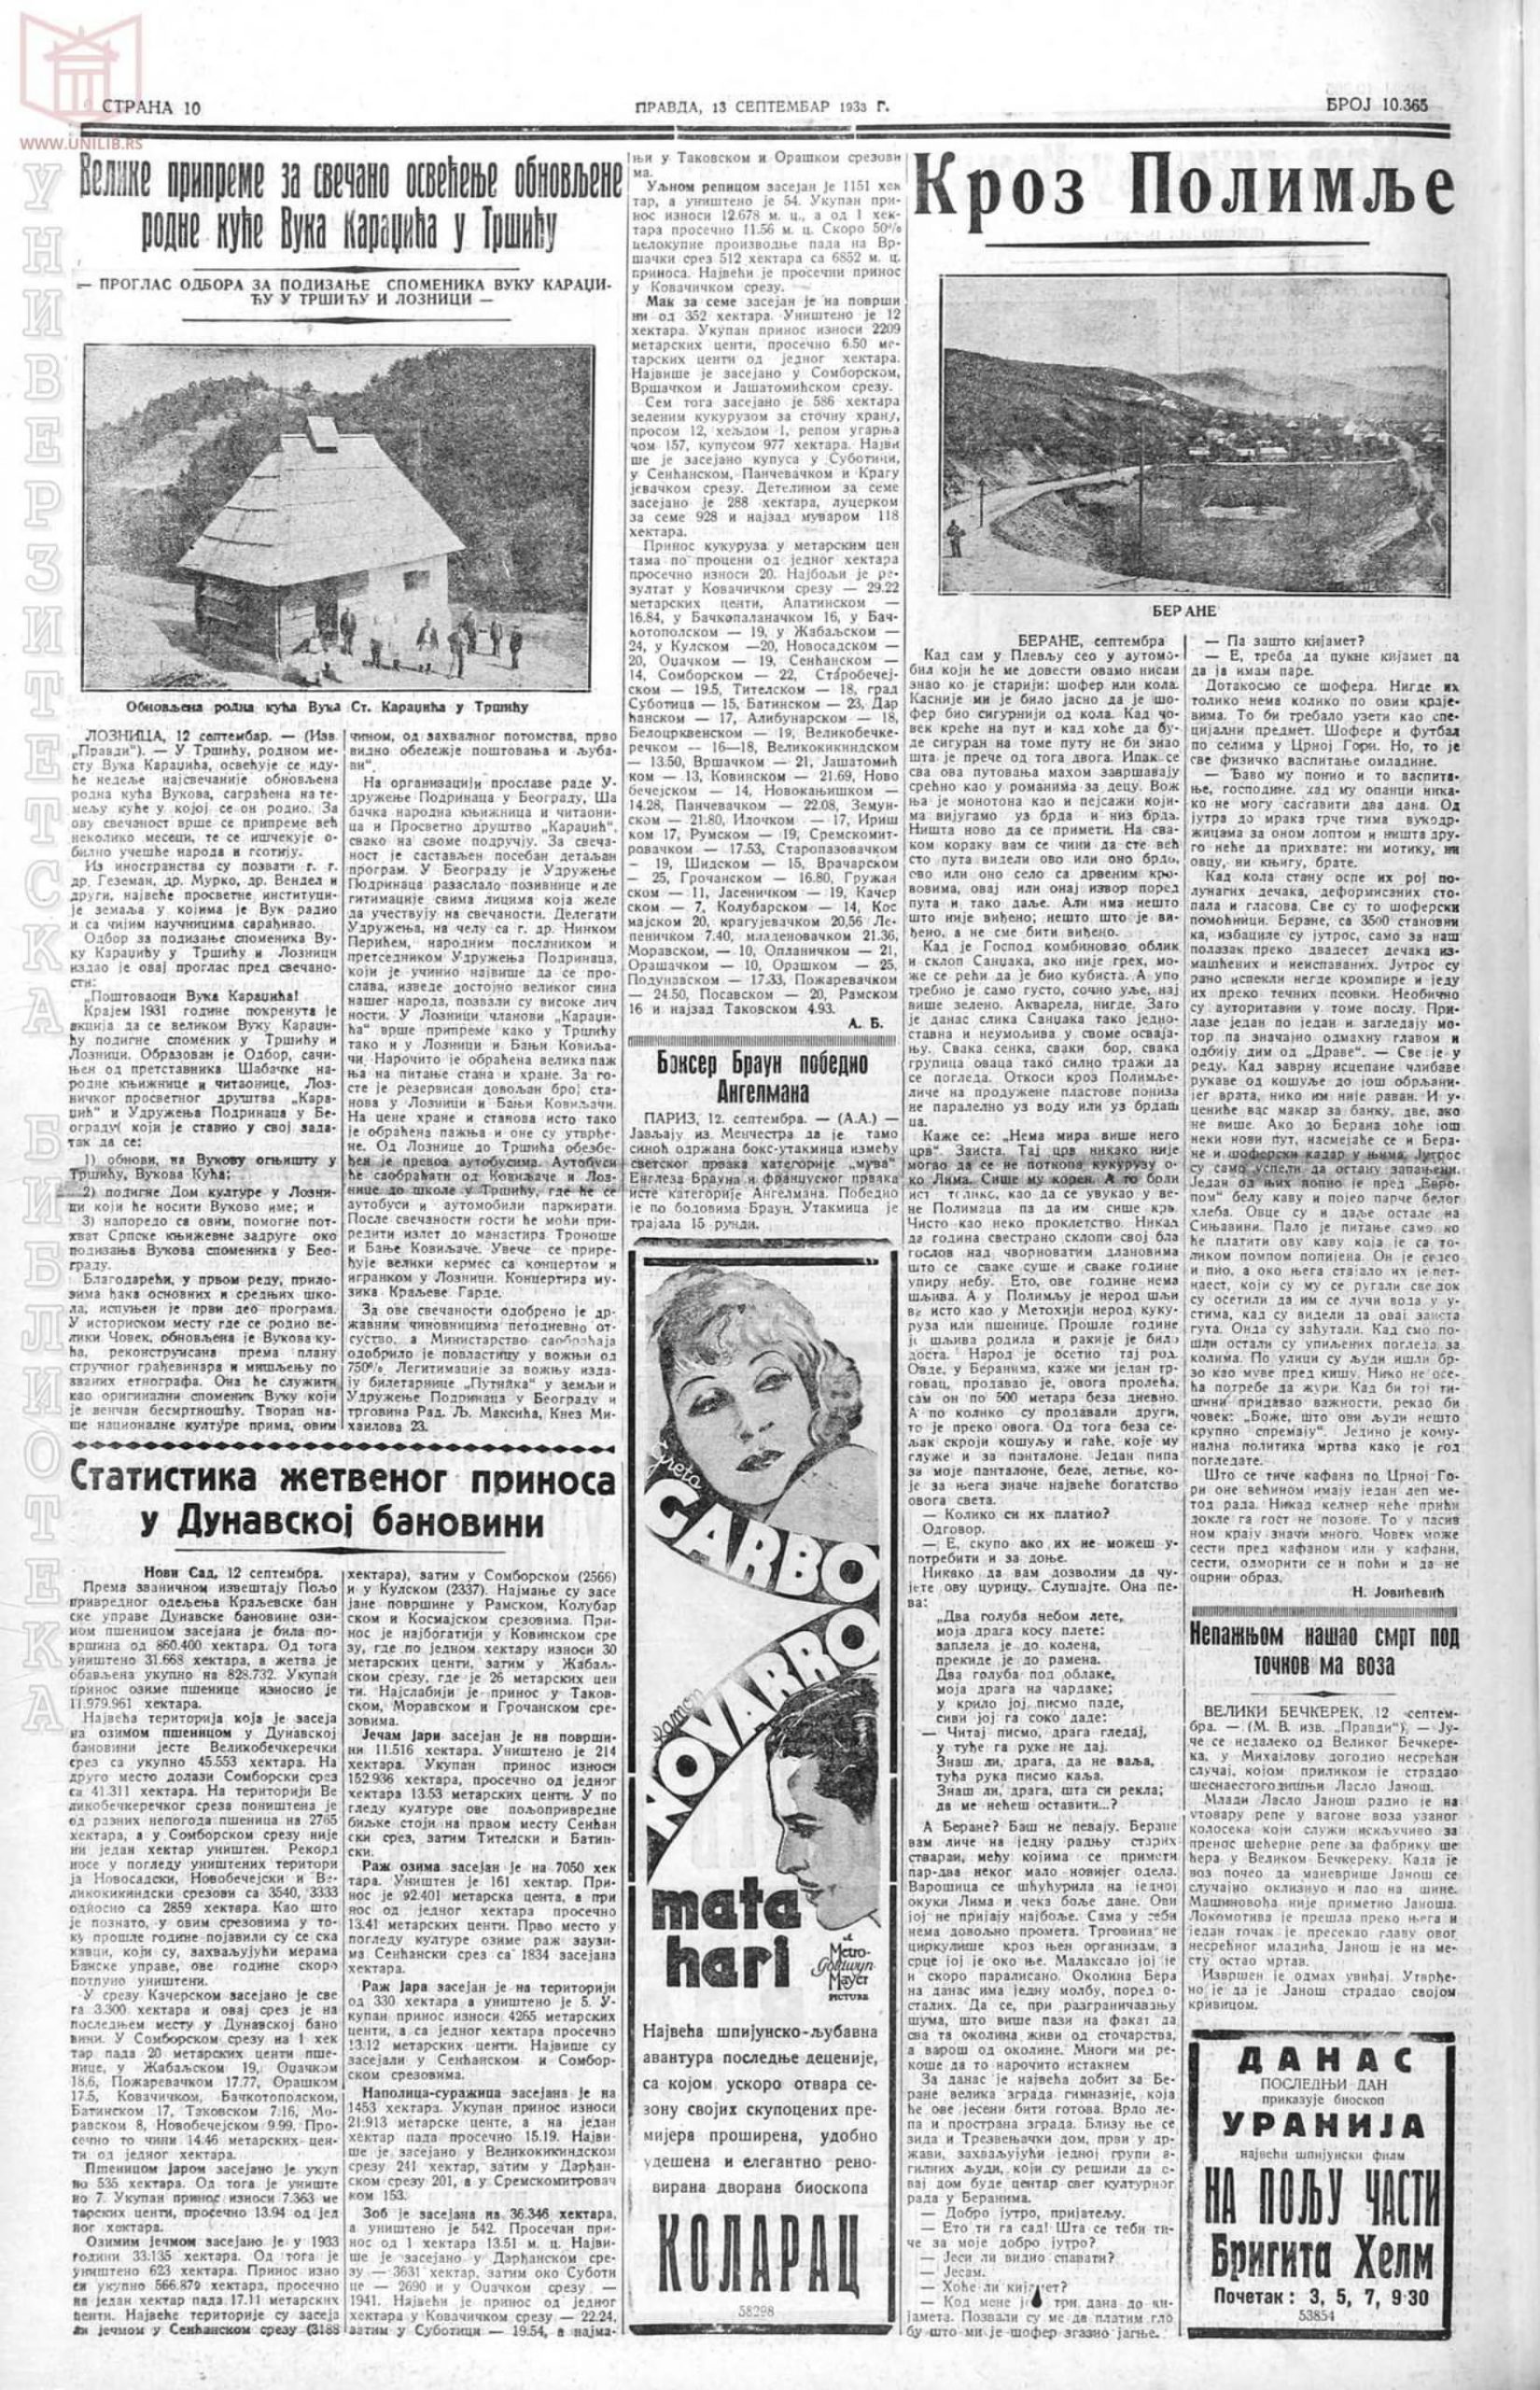 Pravda 13.09.1933 p10-1